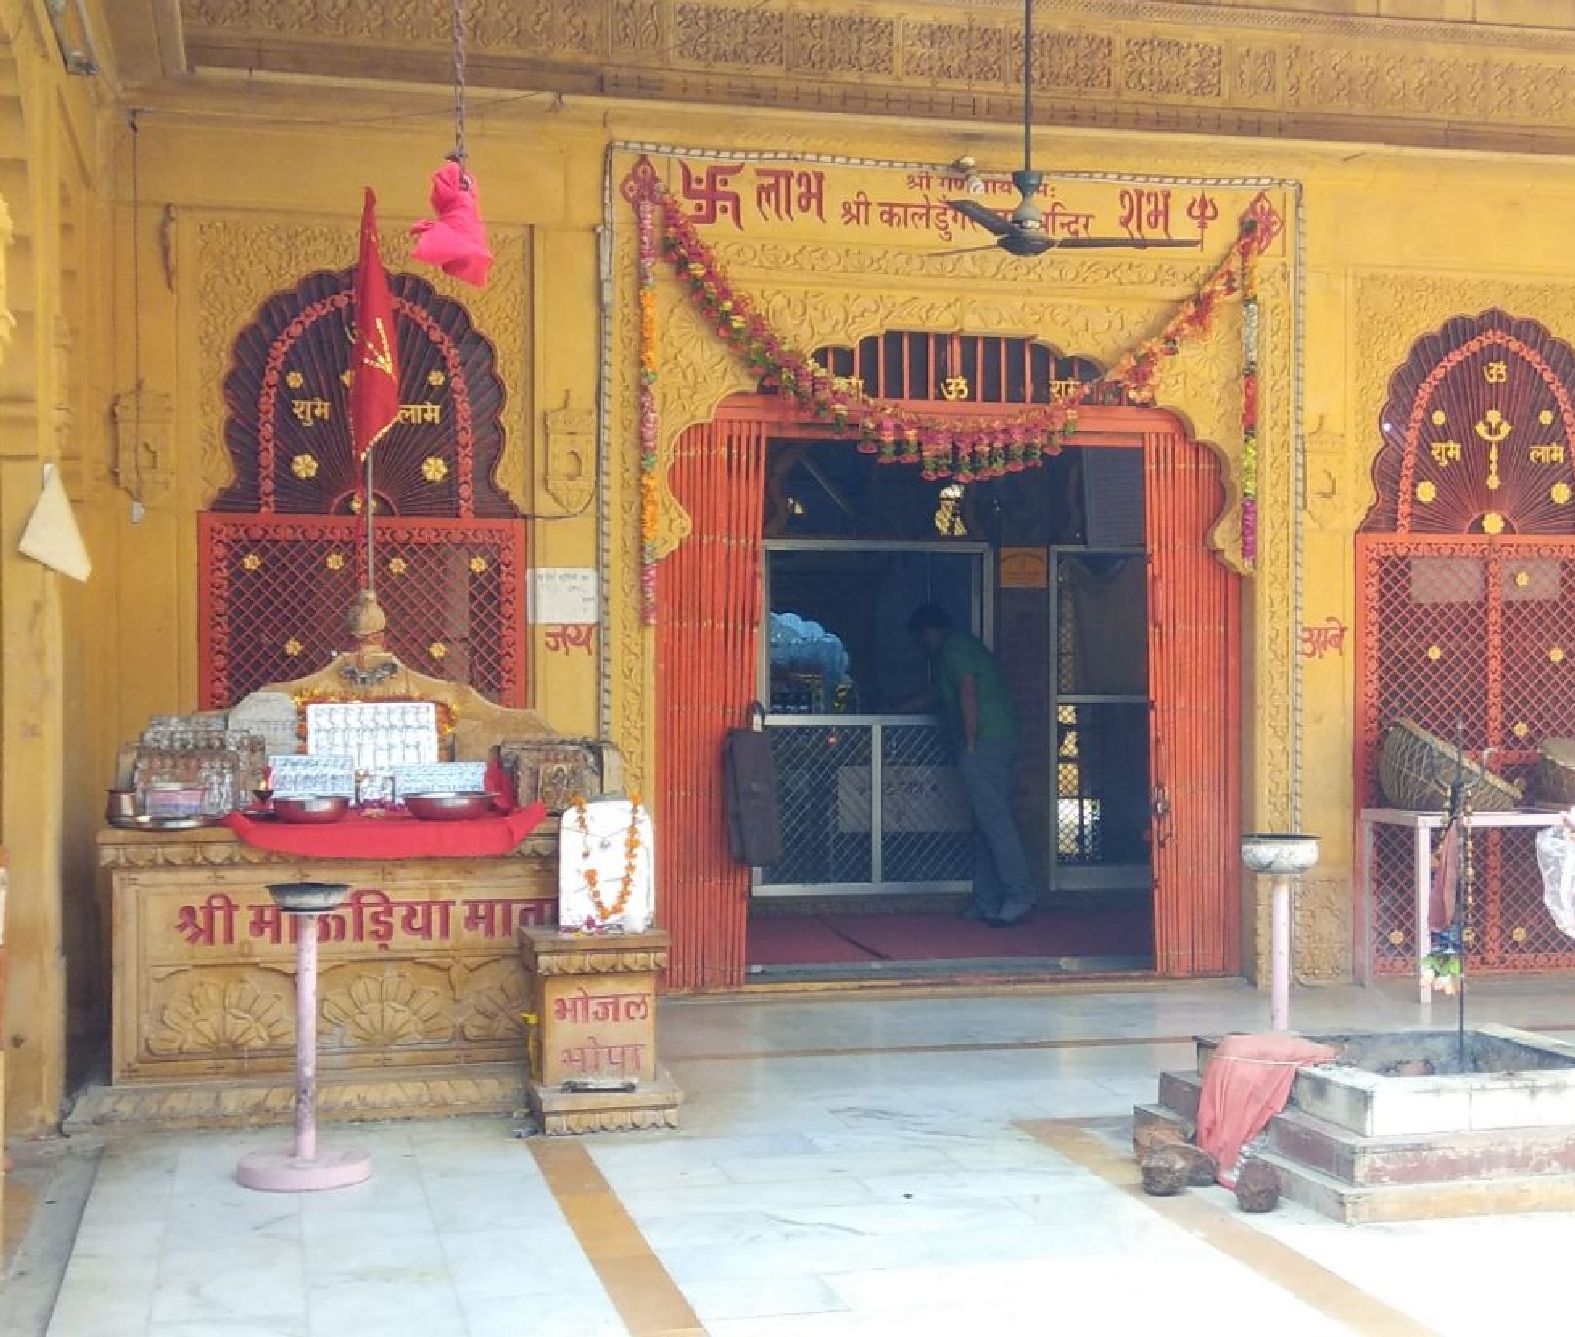 कालेडूंगरराय खेजडिय़ा के मंदिर बना हुआ है श्रद्धा का केन्द्र